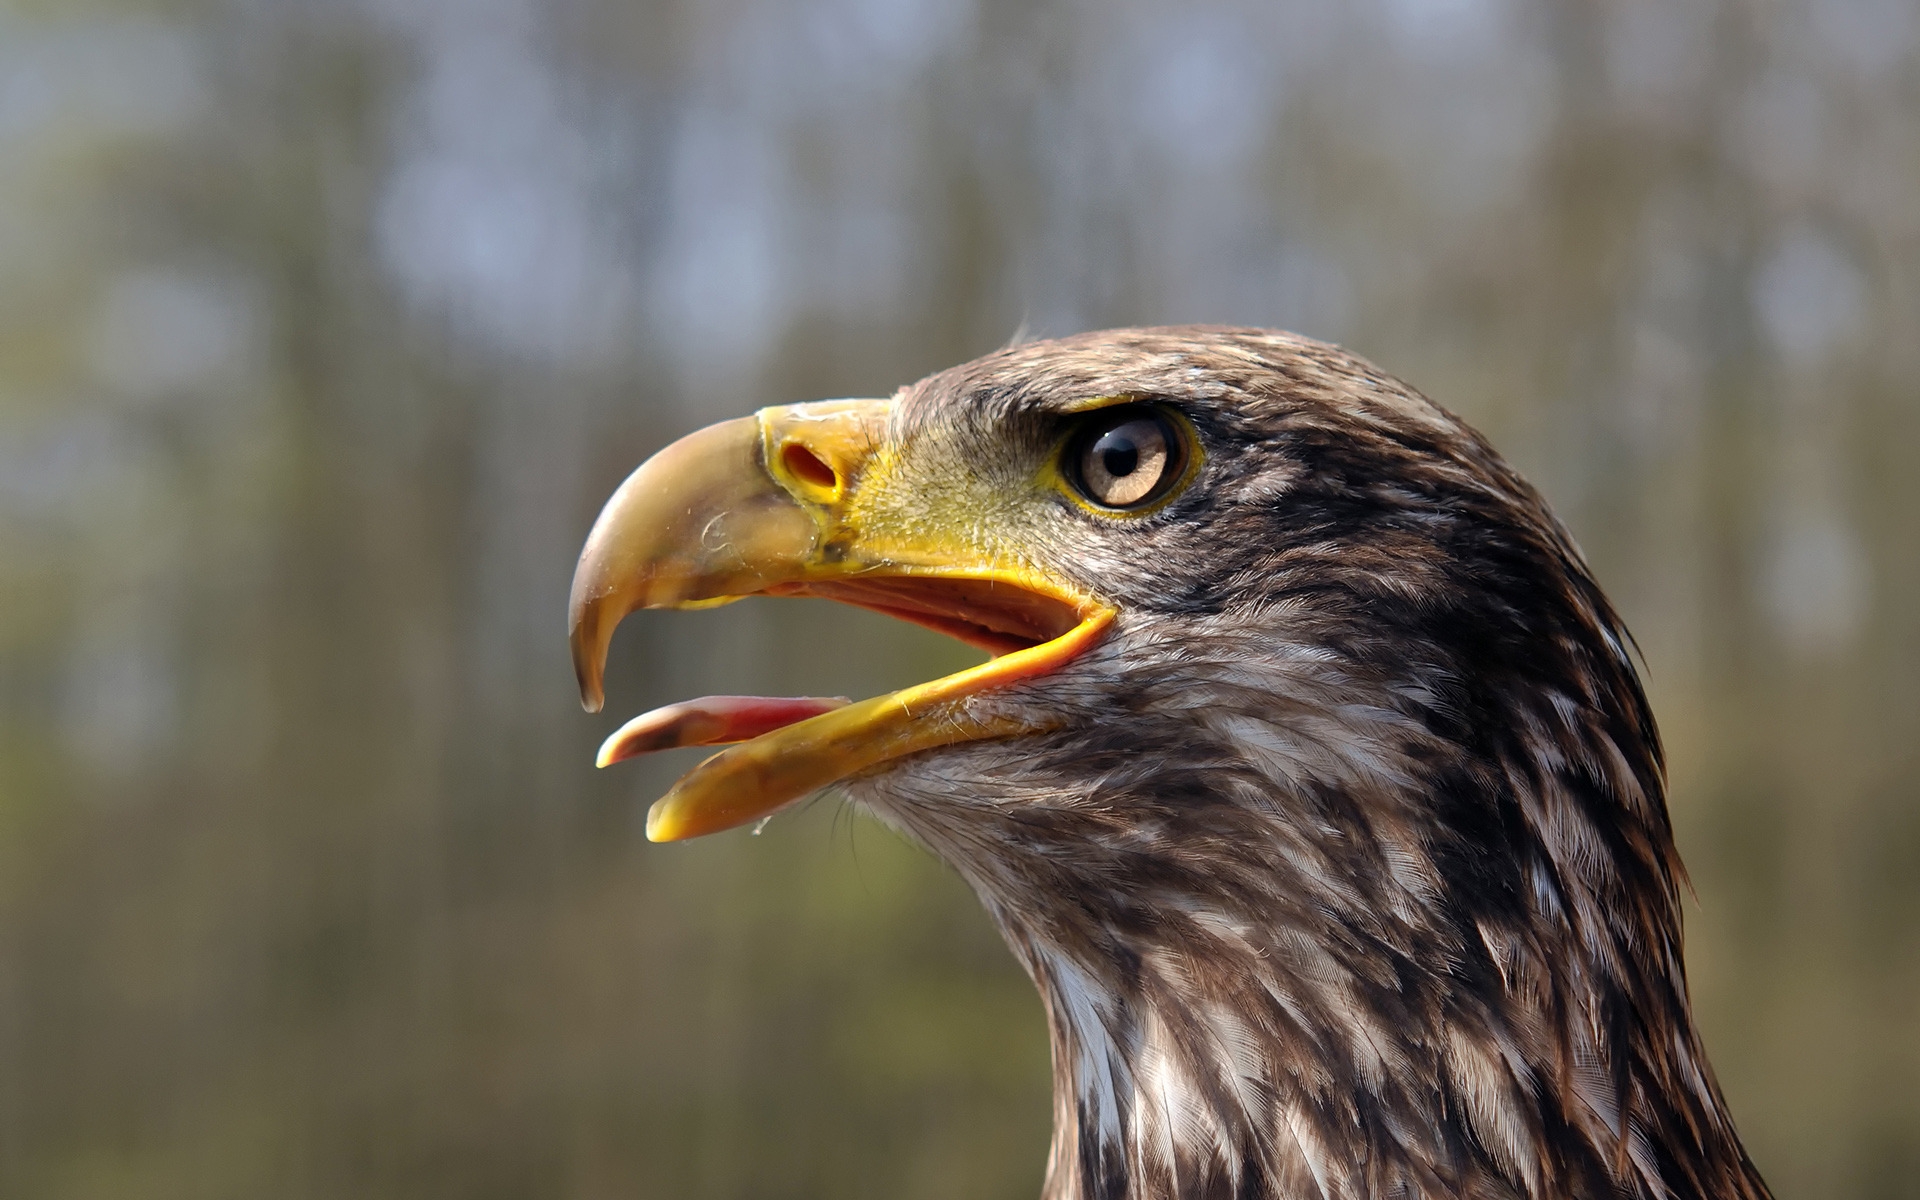 Juvenile Bald Eagle for 1920 x 1200 widescreen resolution